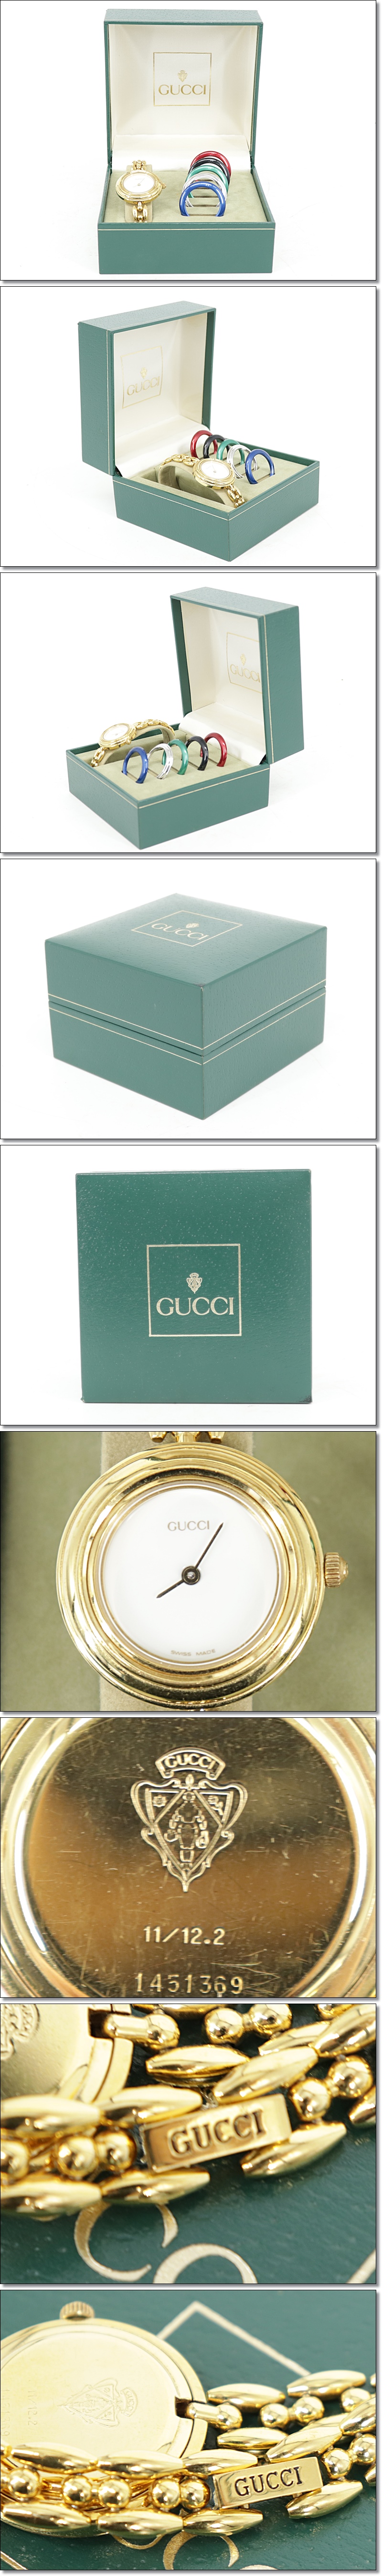 好評高品質GUCCI グッチ チェンジベゼル レディース腕時計 クォーツ GP 本物保証 S598 女性用